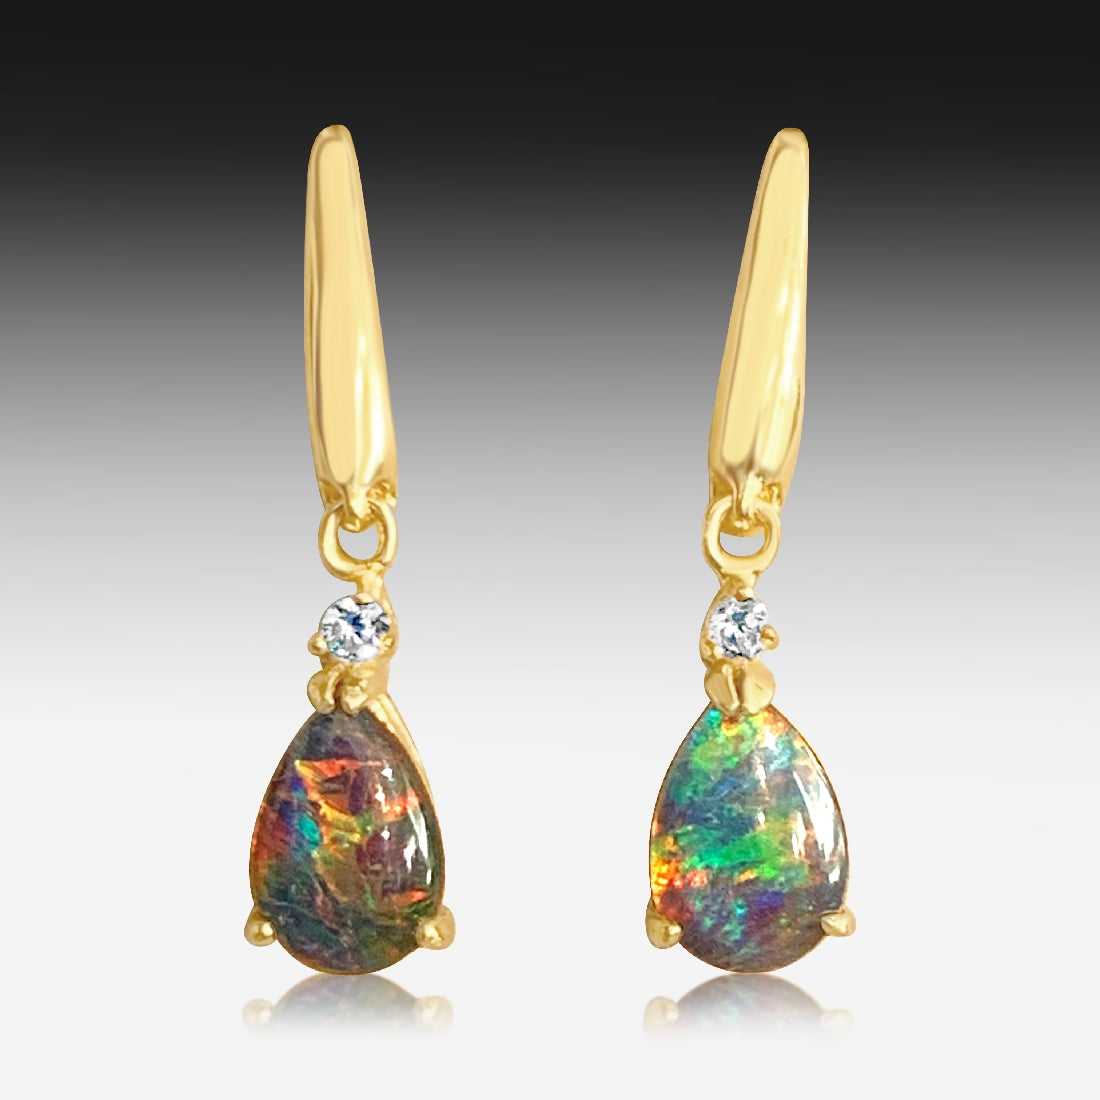 Silver Gold Plated Opal triplet earrings - Masterpiece Jewellery Opal & Gems Sydney Australia | Online Shop